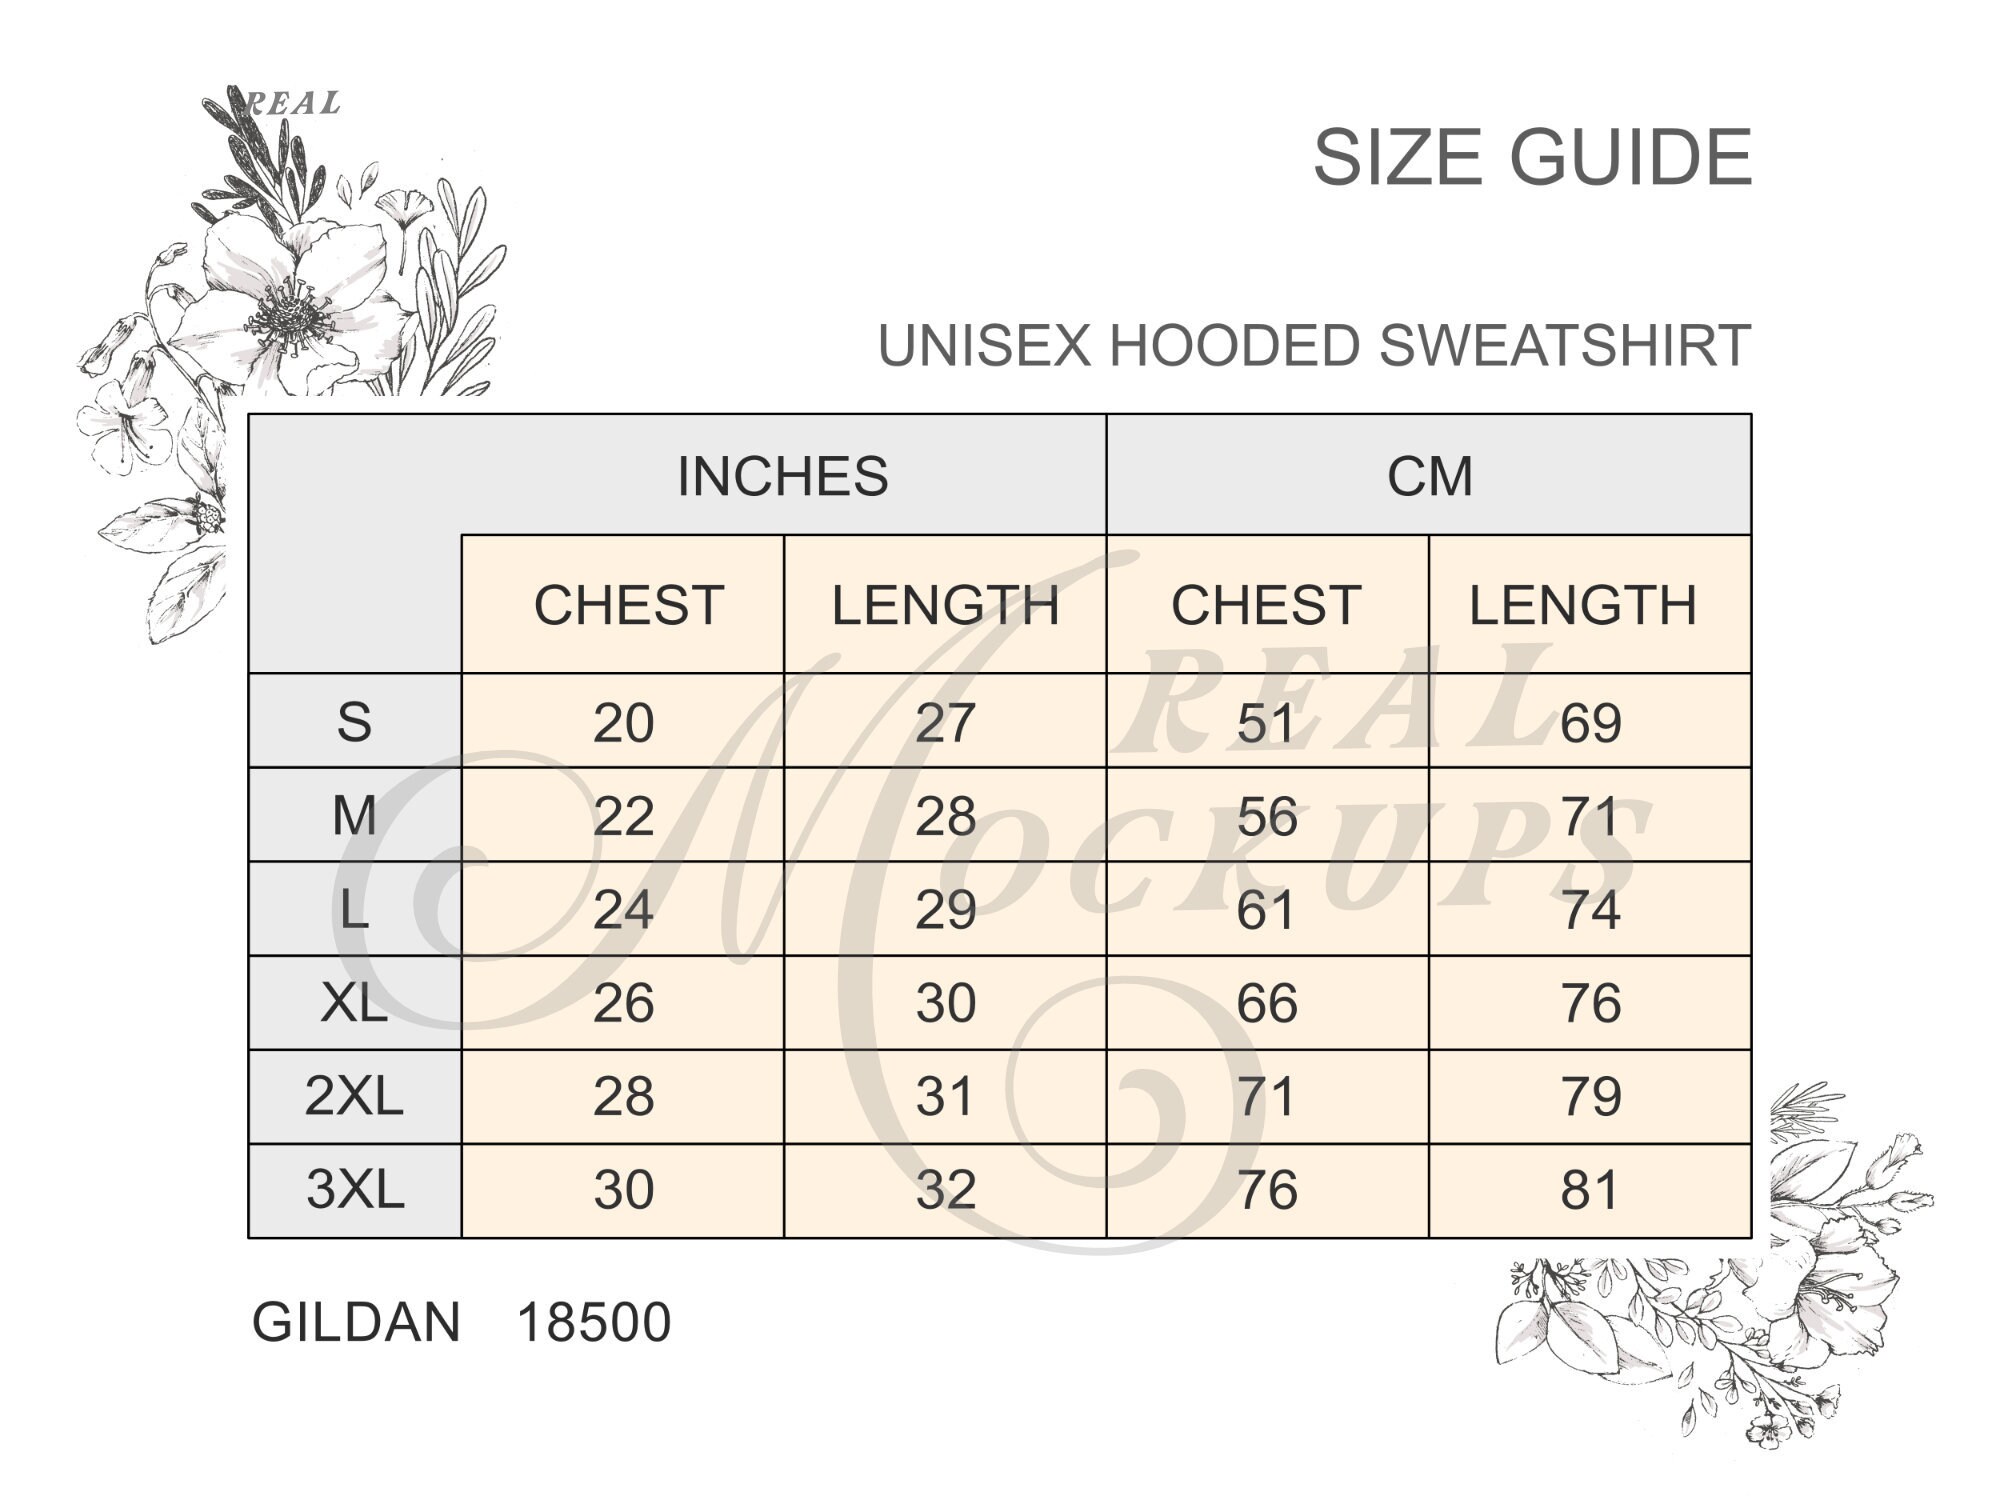 Gildan 18500 Size Chart Unisex Hooded Sweatshirt Size Guide Best Size ...